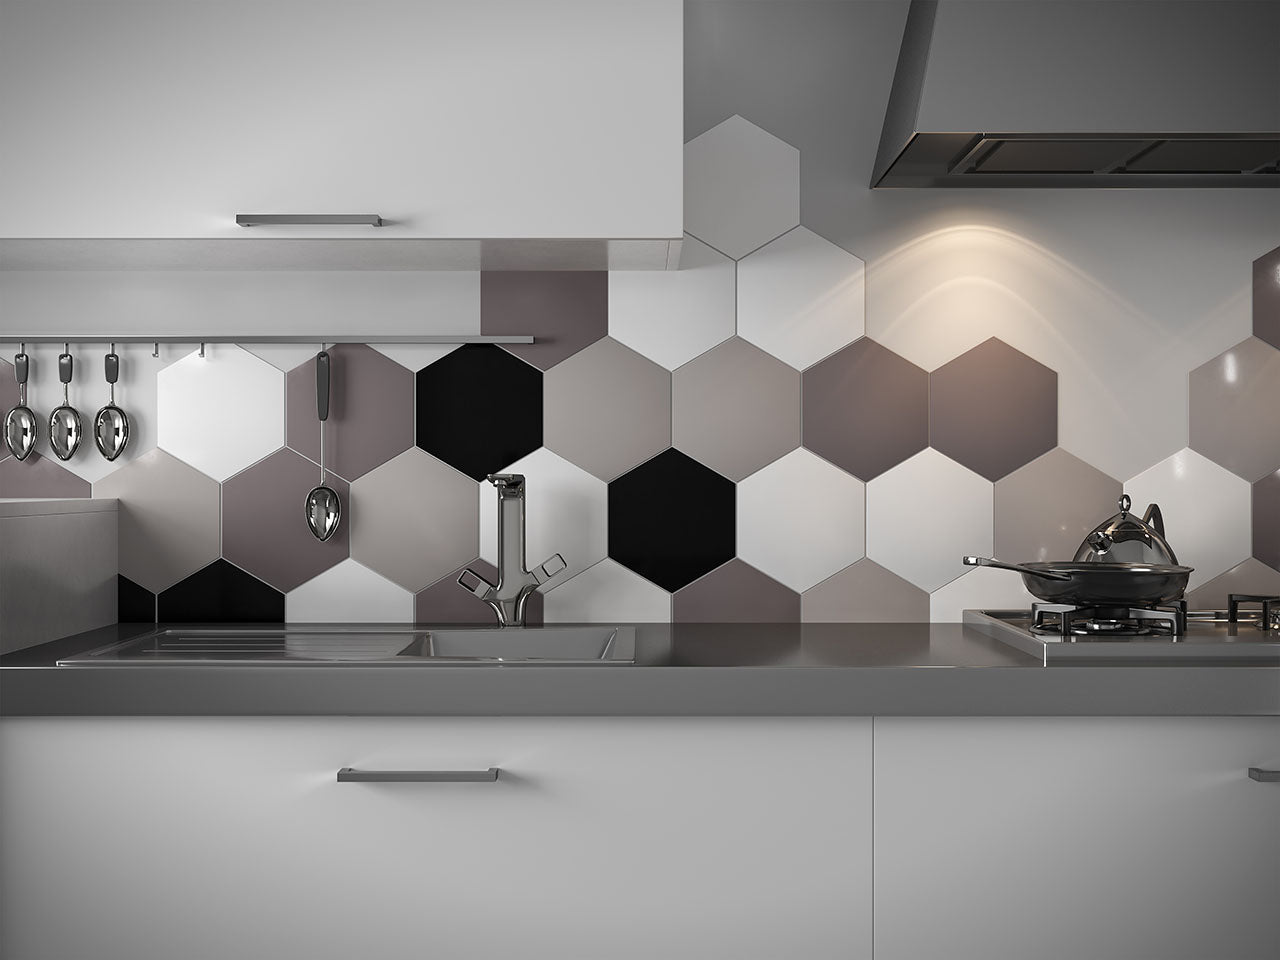 Floors 2000 - Solids - 8.5 in. x 10 in. Porcelain Hexagon Tile - White